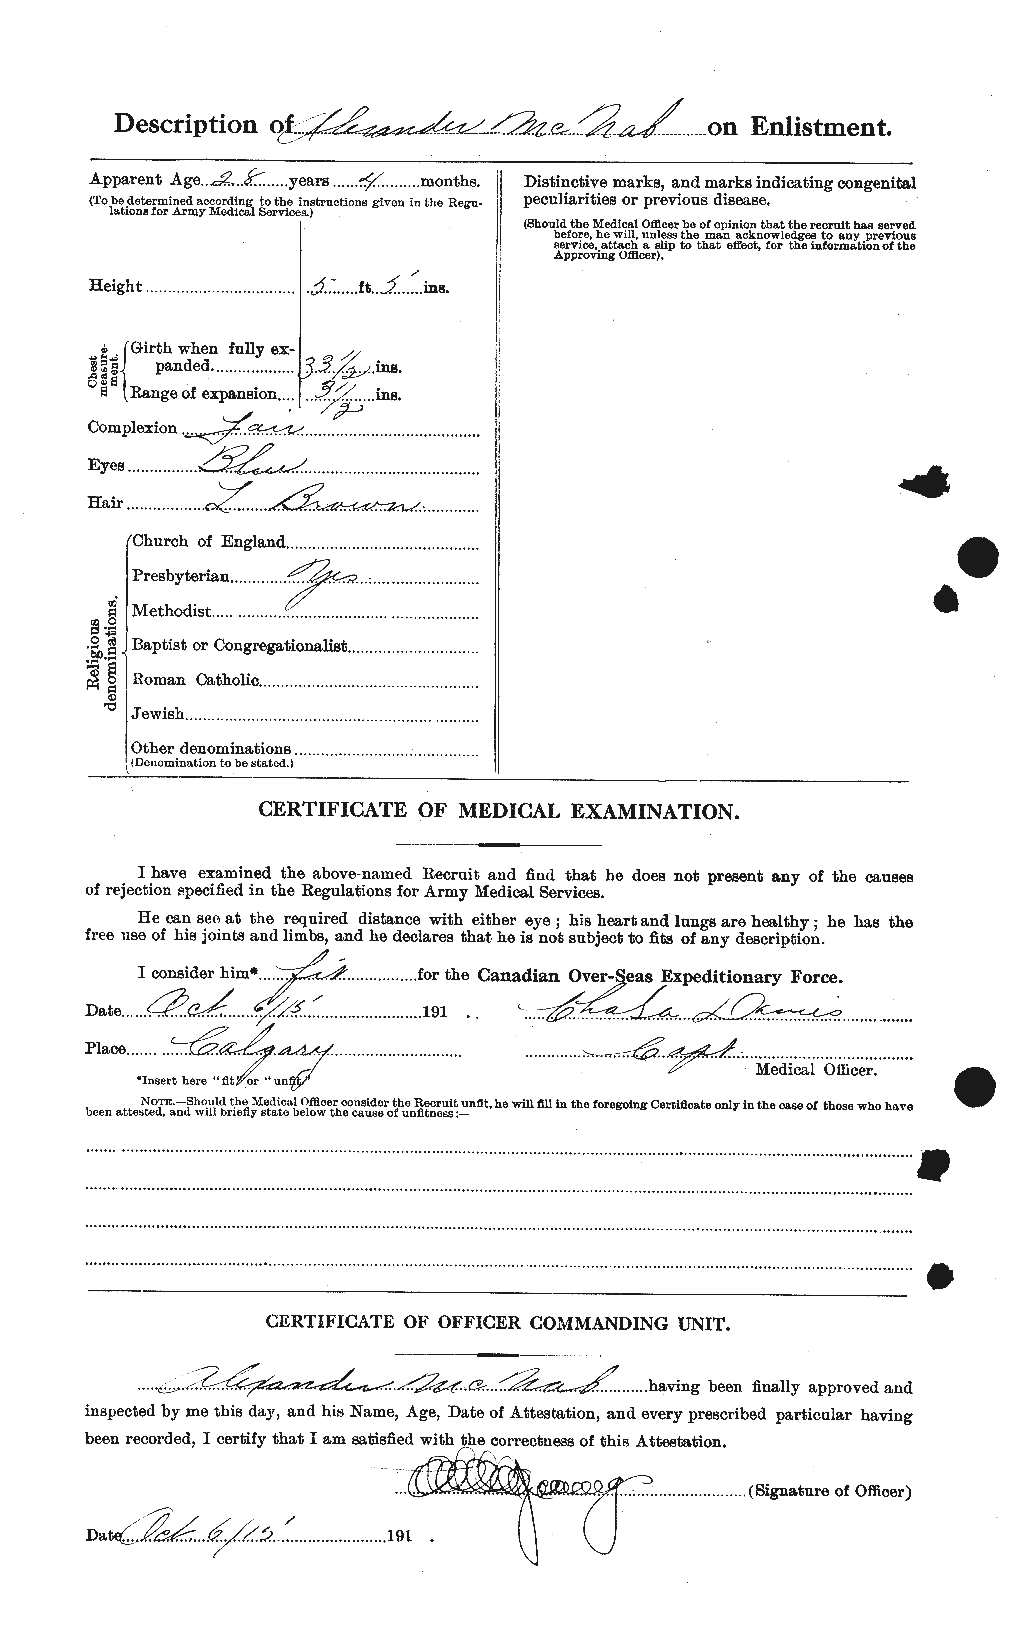 Dossiers du Personnel de la Première Guerre mondiale - CEC 539510b